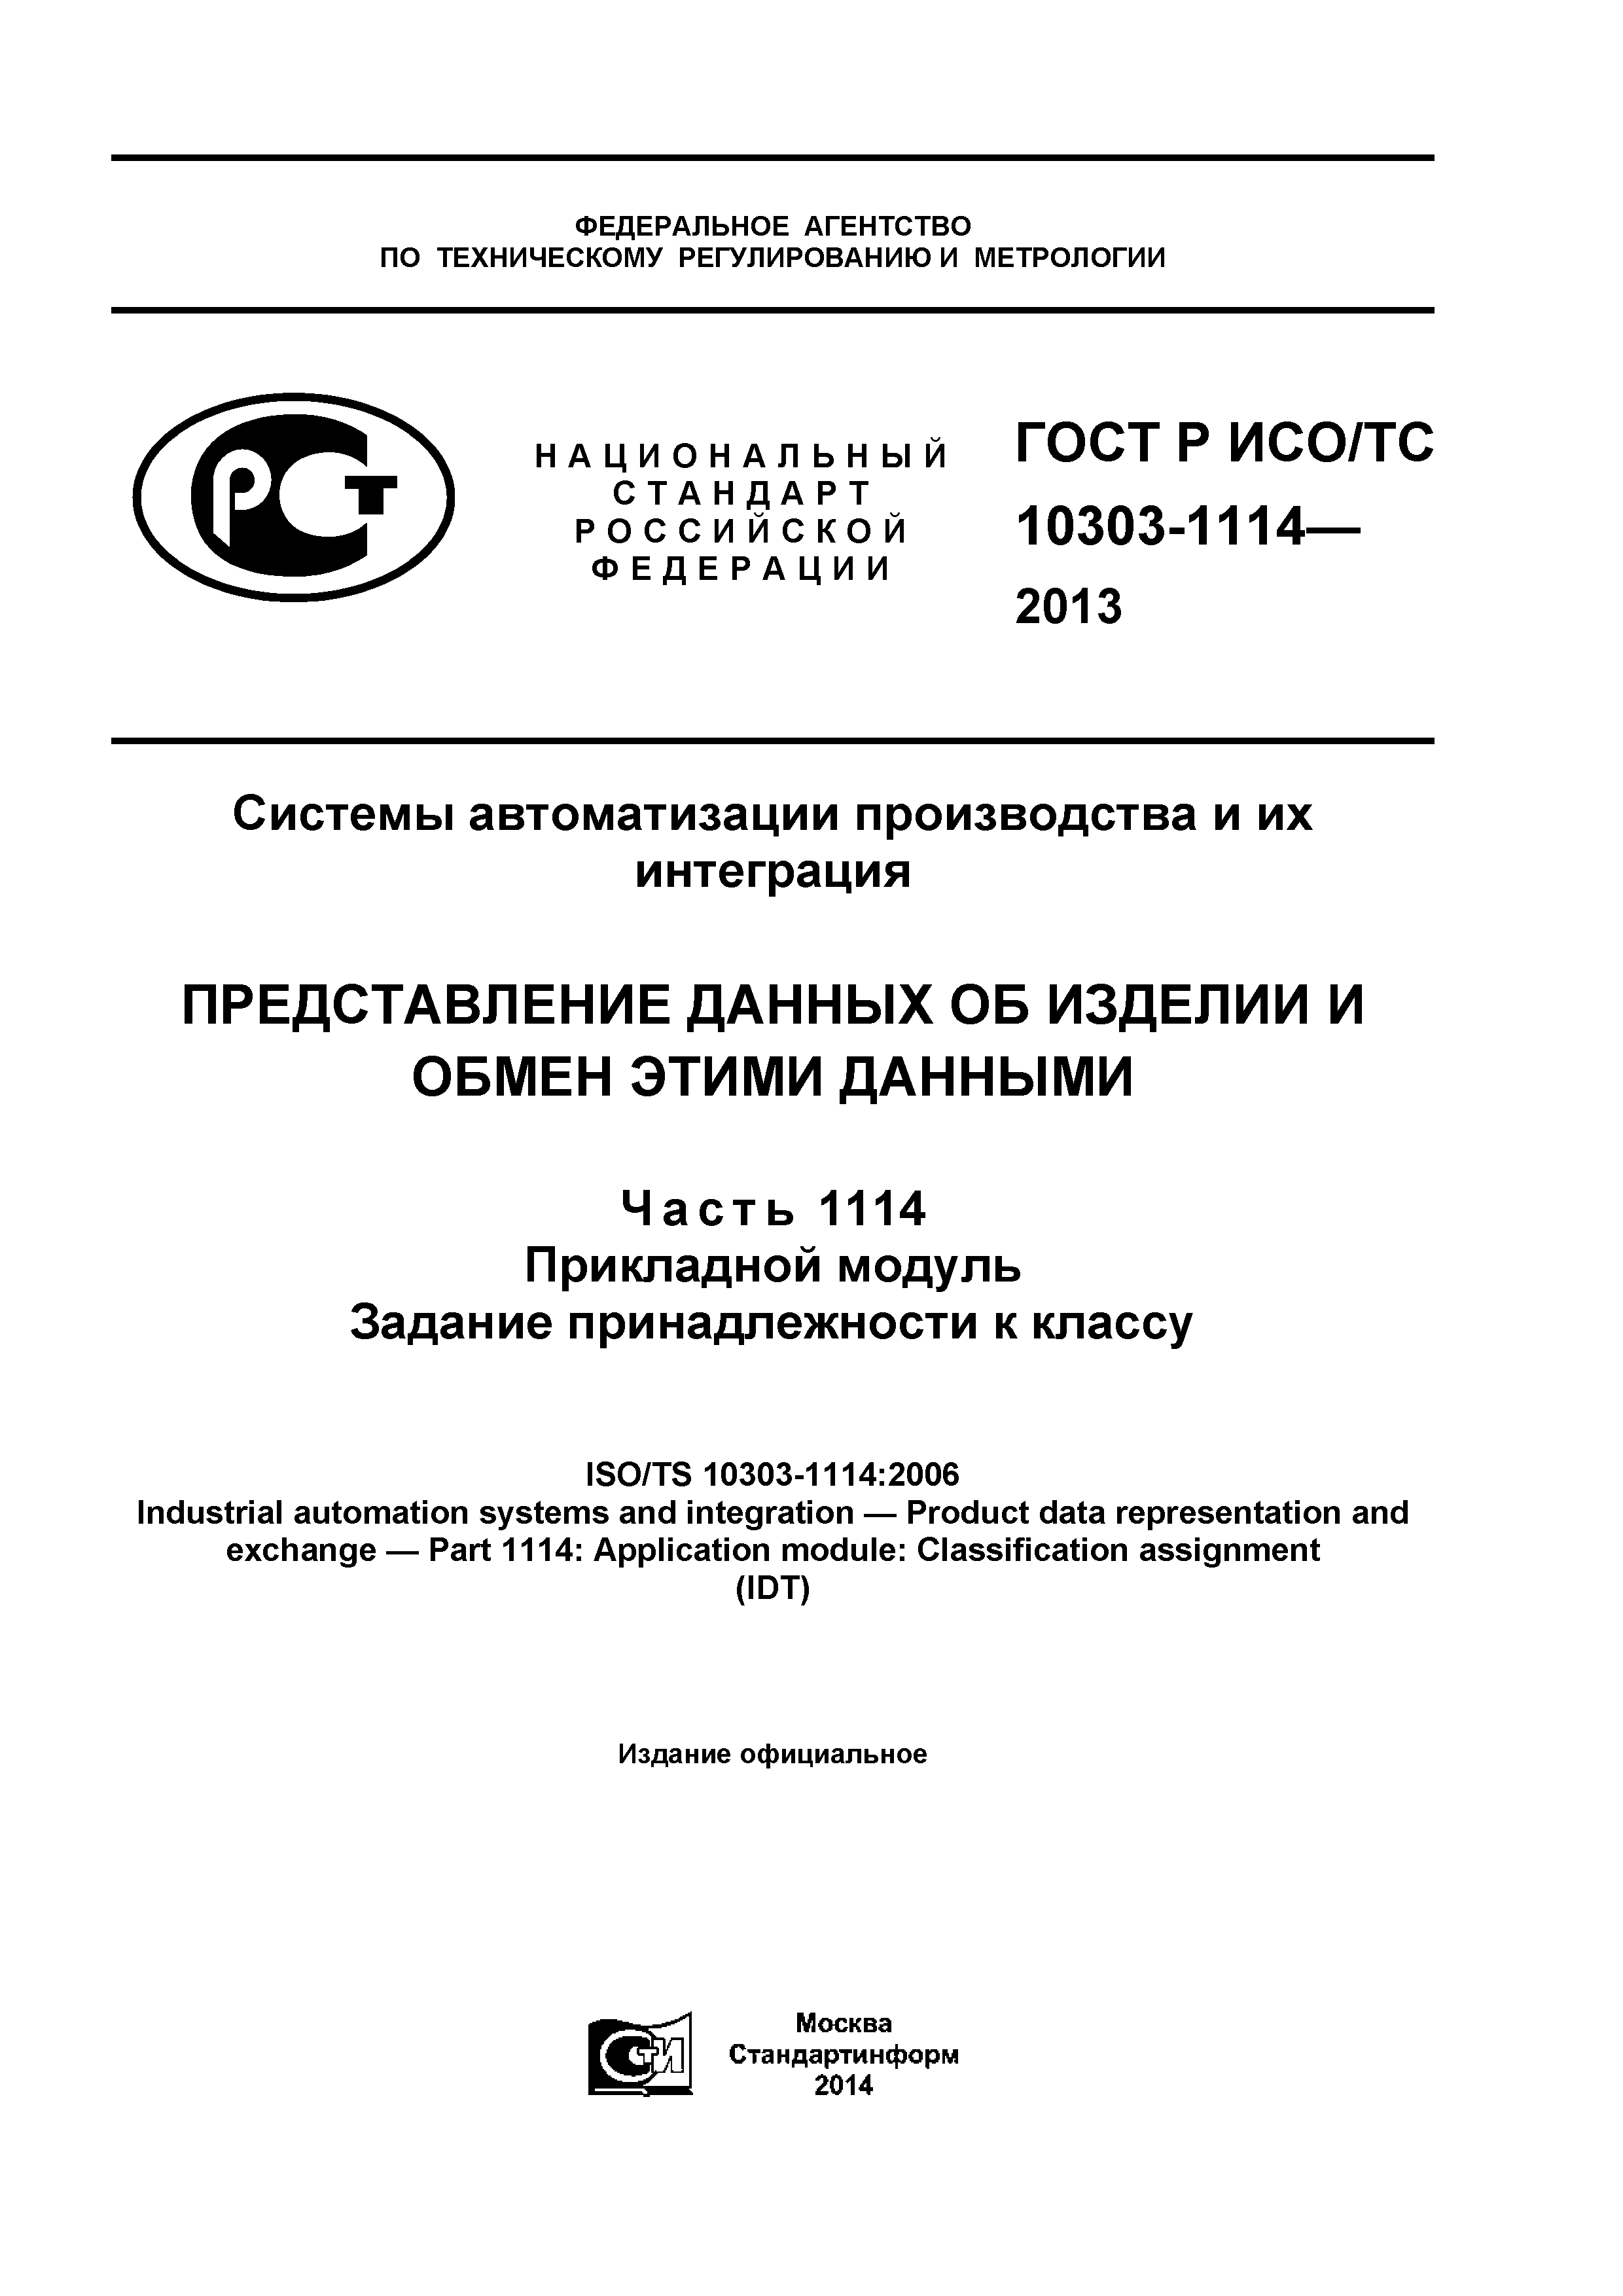 ГОСТ Р ИСО/ТС 10303-1114-2013